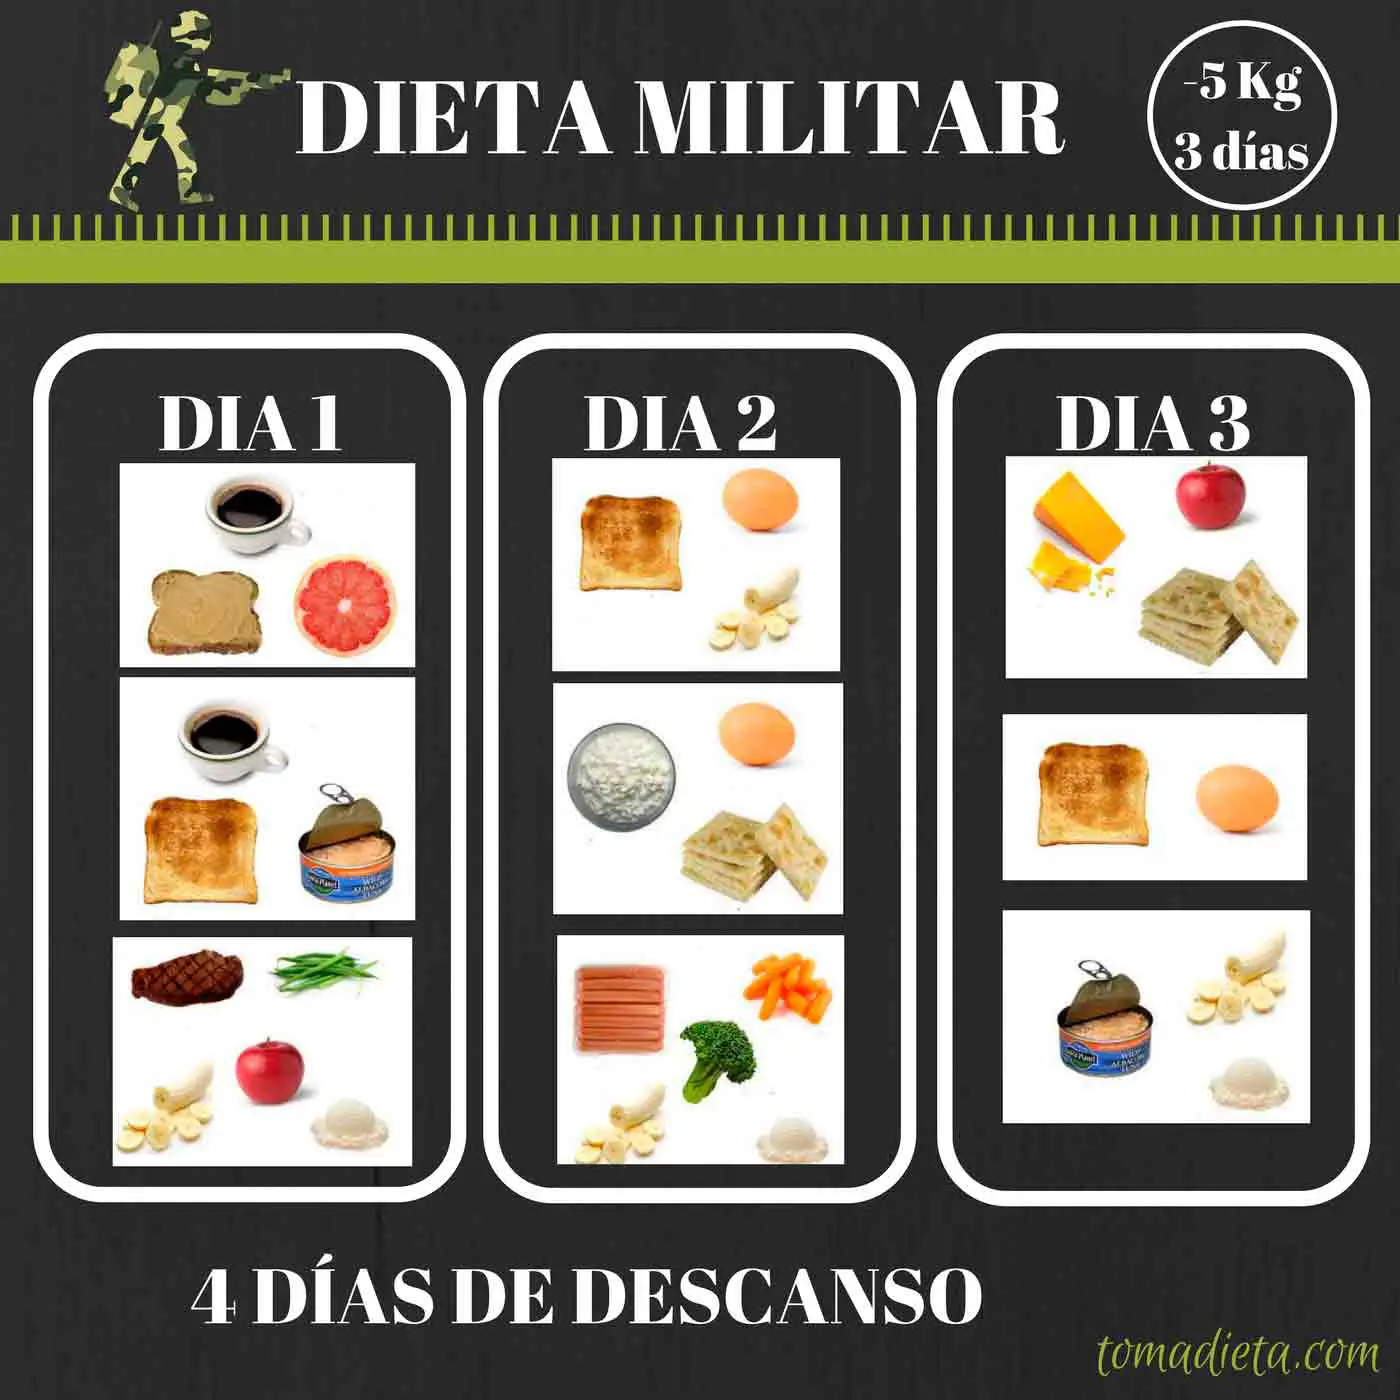 Photo of ¿Qué es la dieta militar de 3 días?